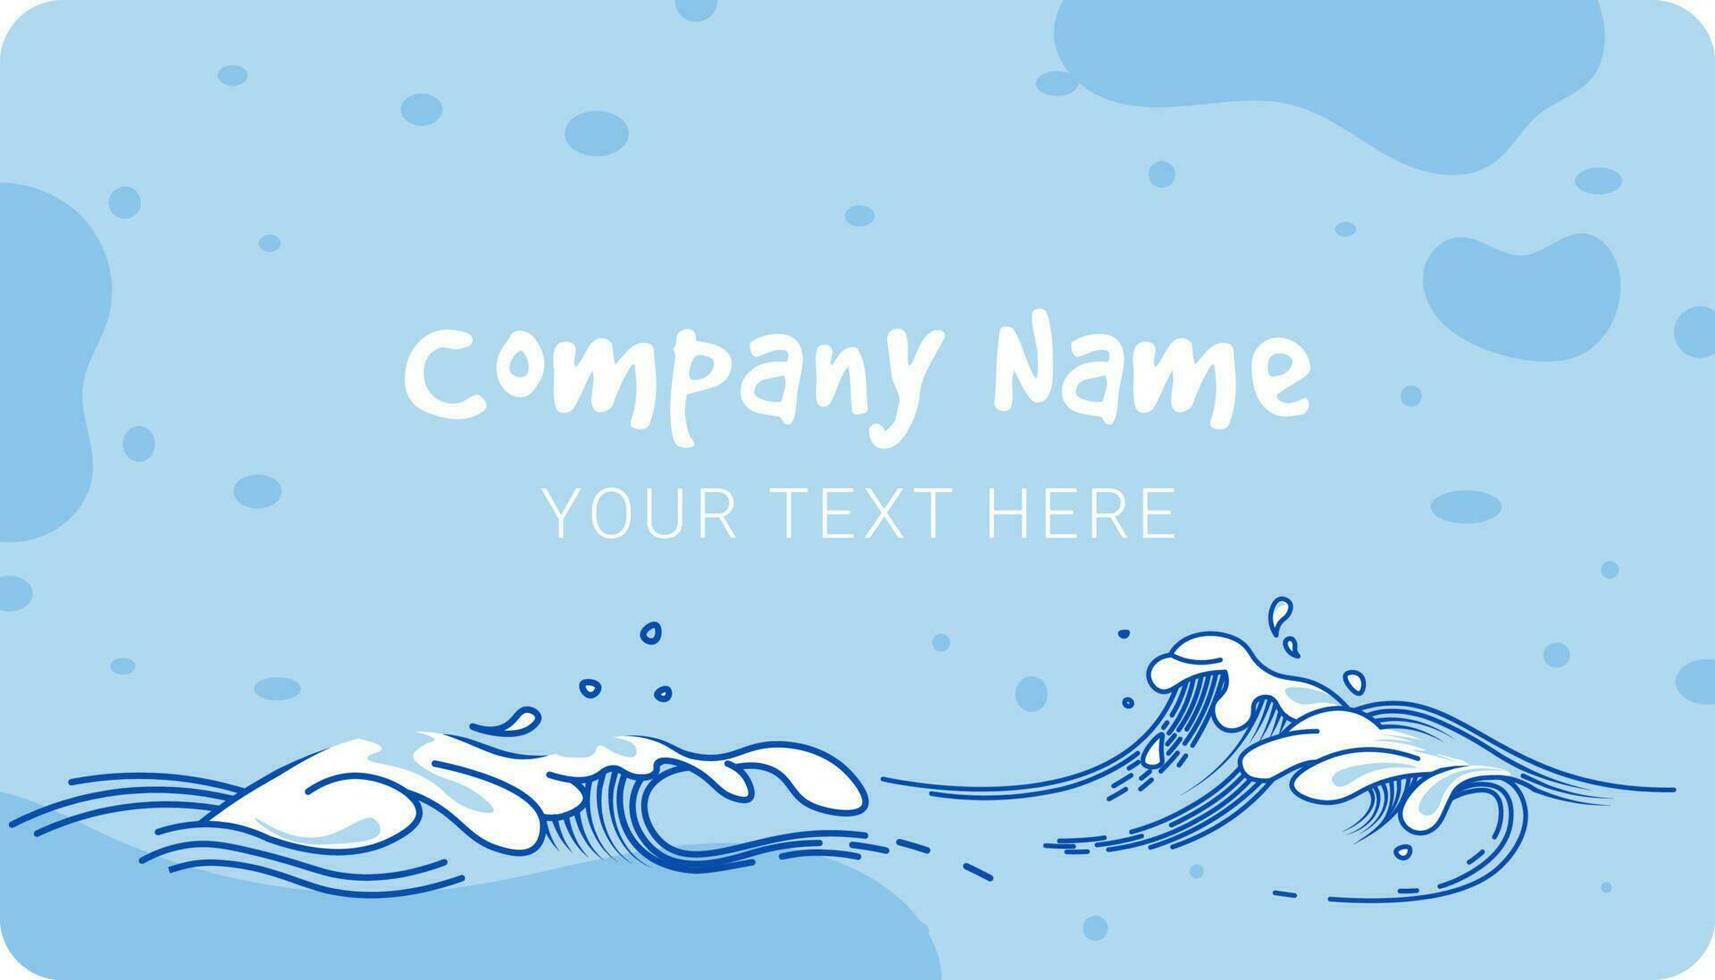 o negócio cartão com companhia nome e seu texto vetor